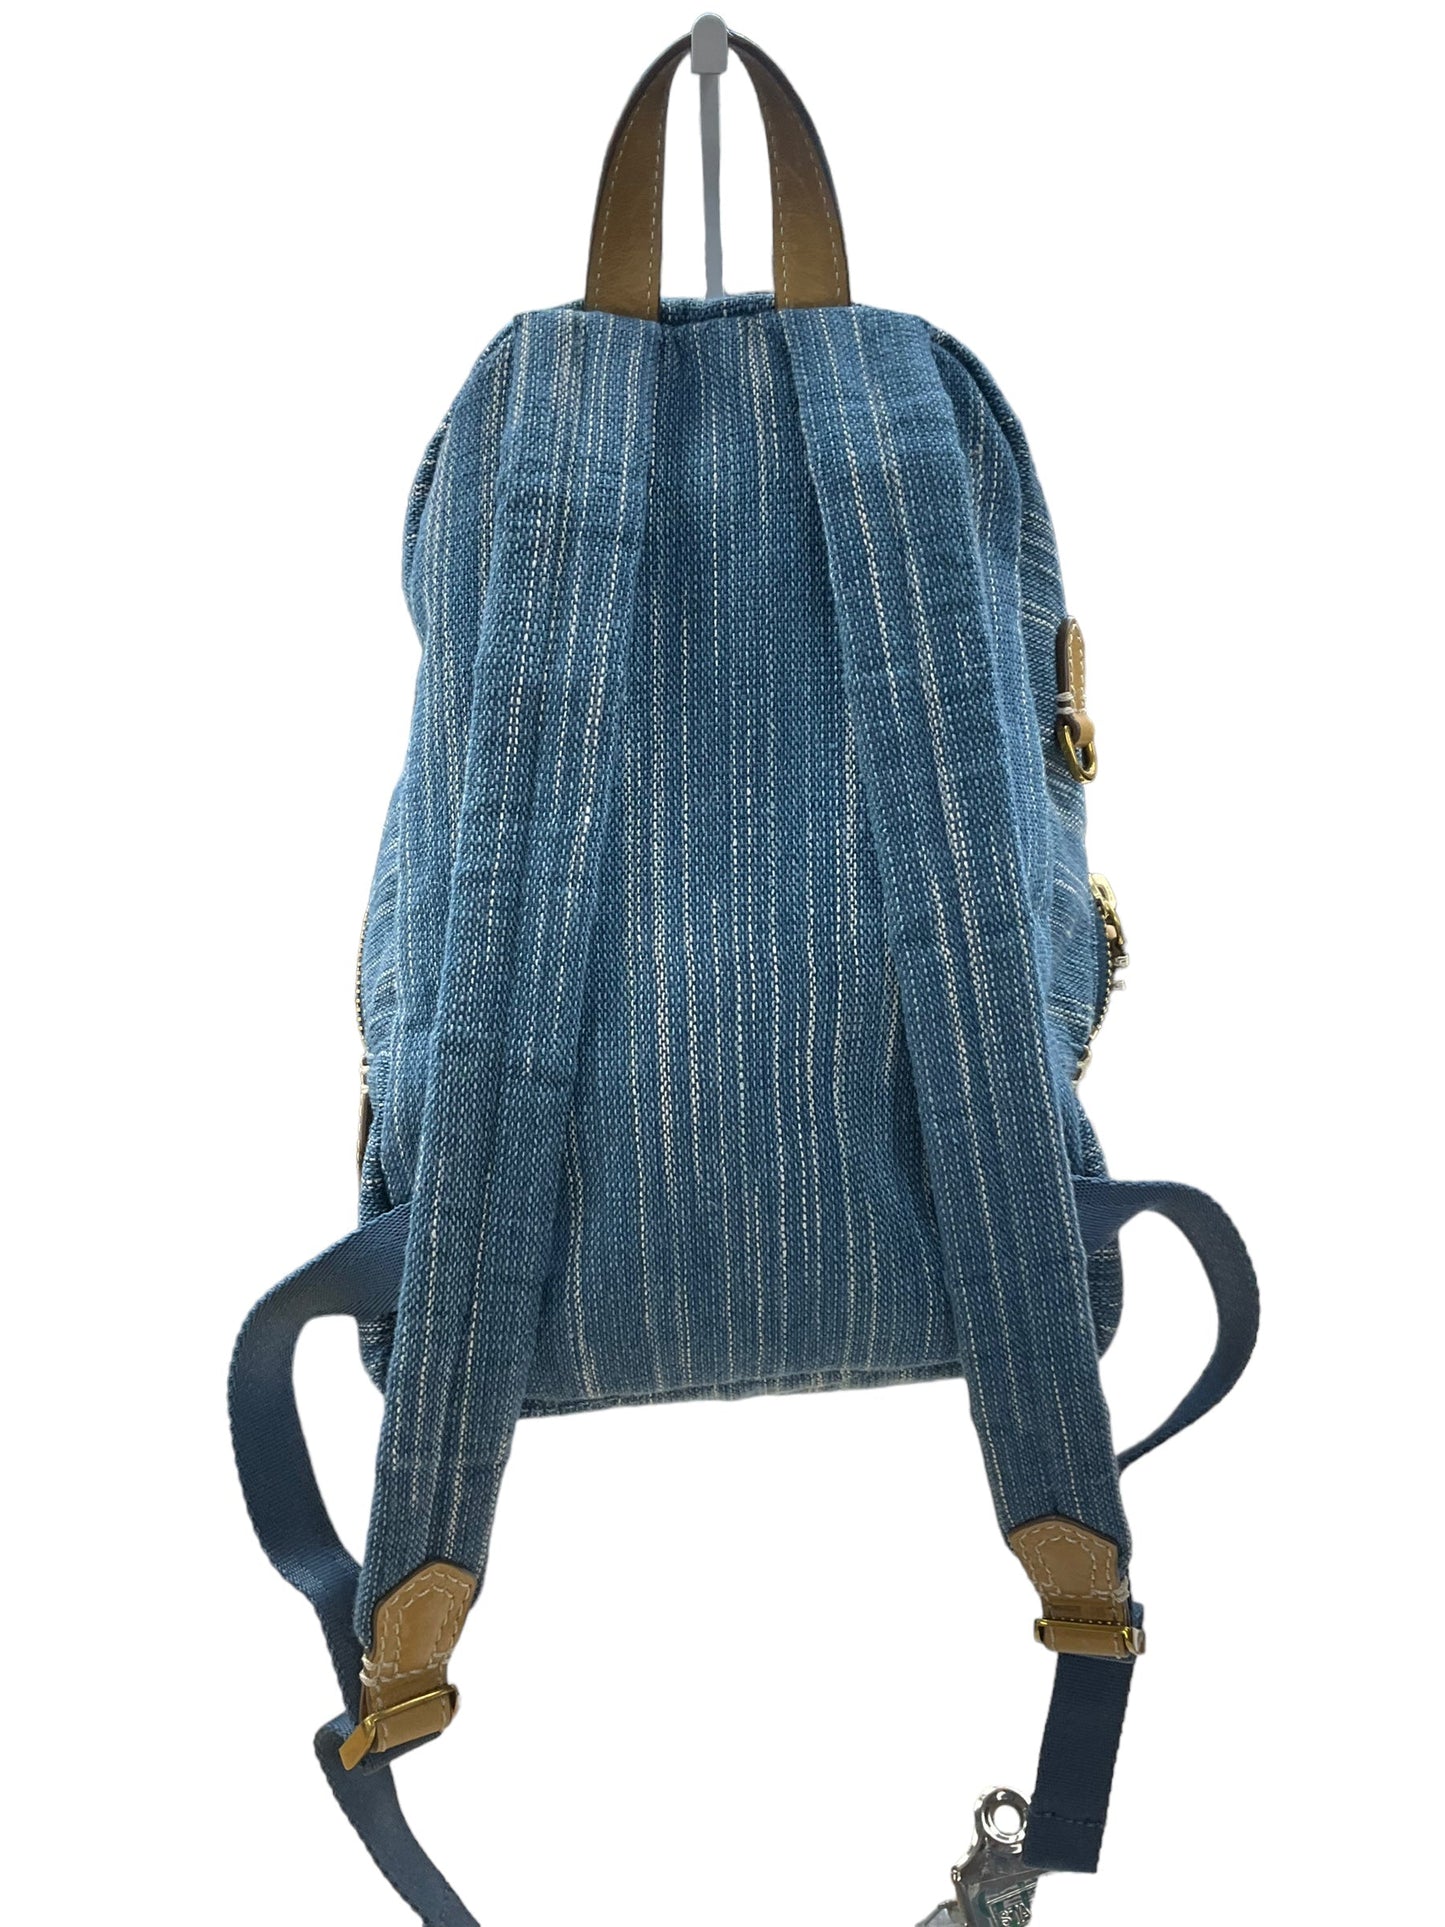 Backpack Designer By Frye  Size: Medium